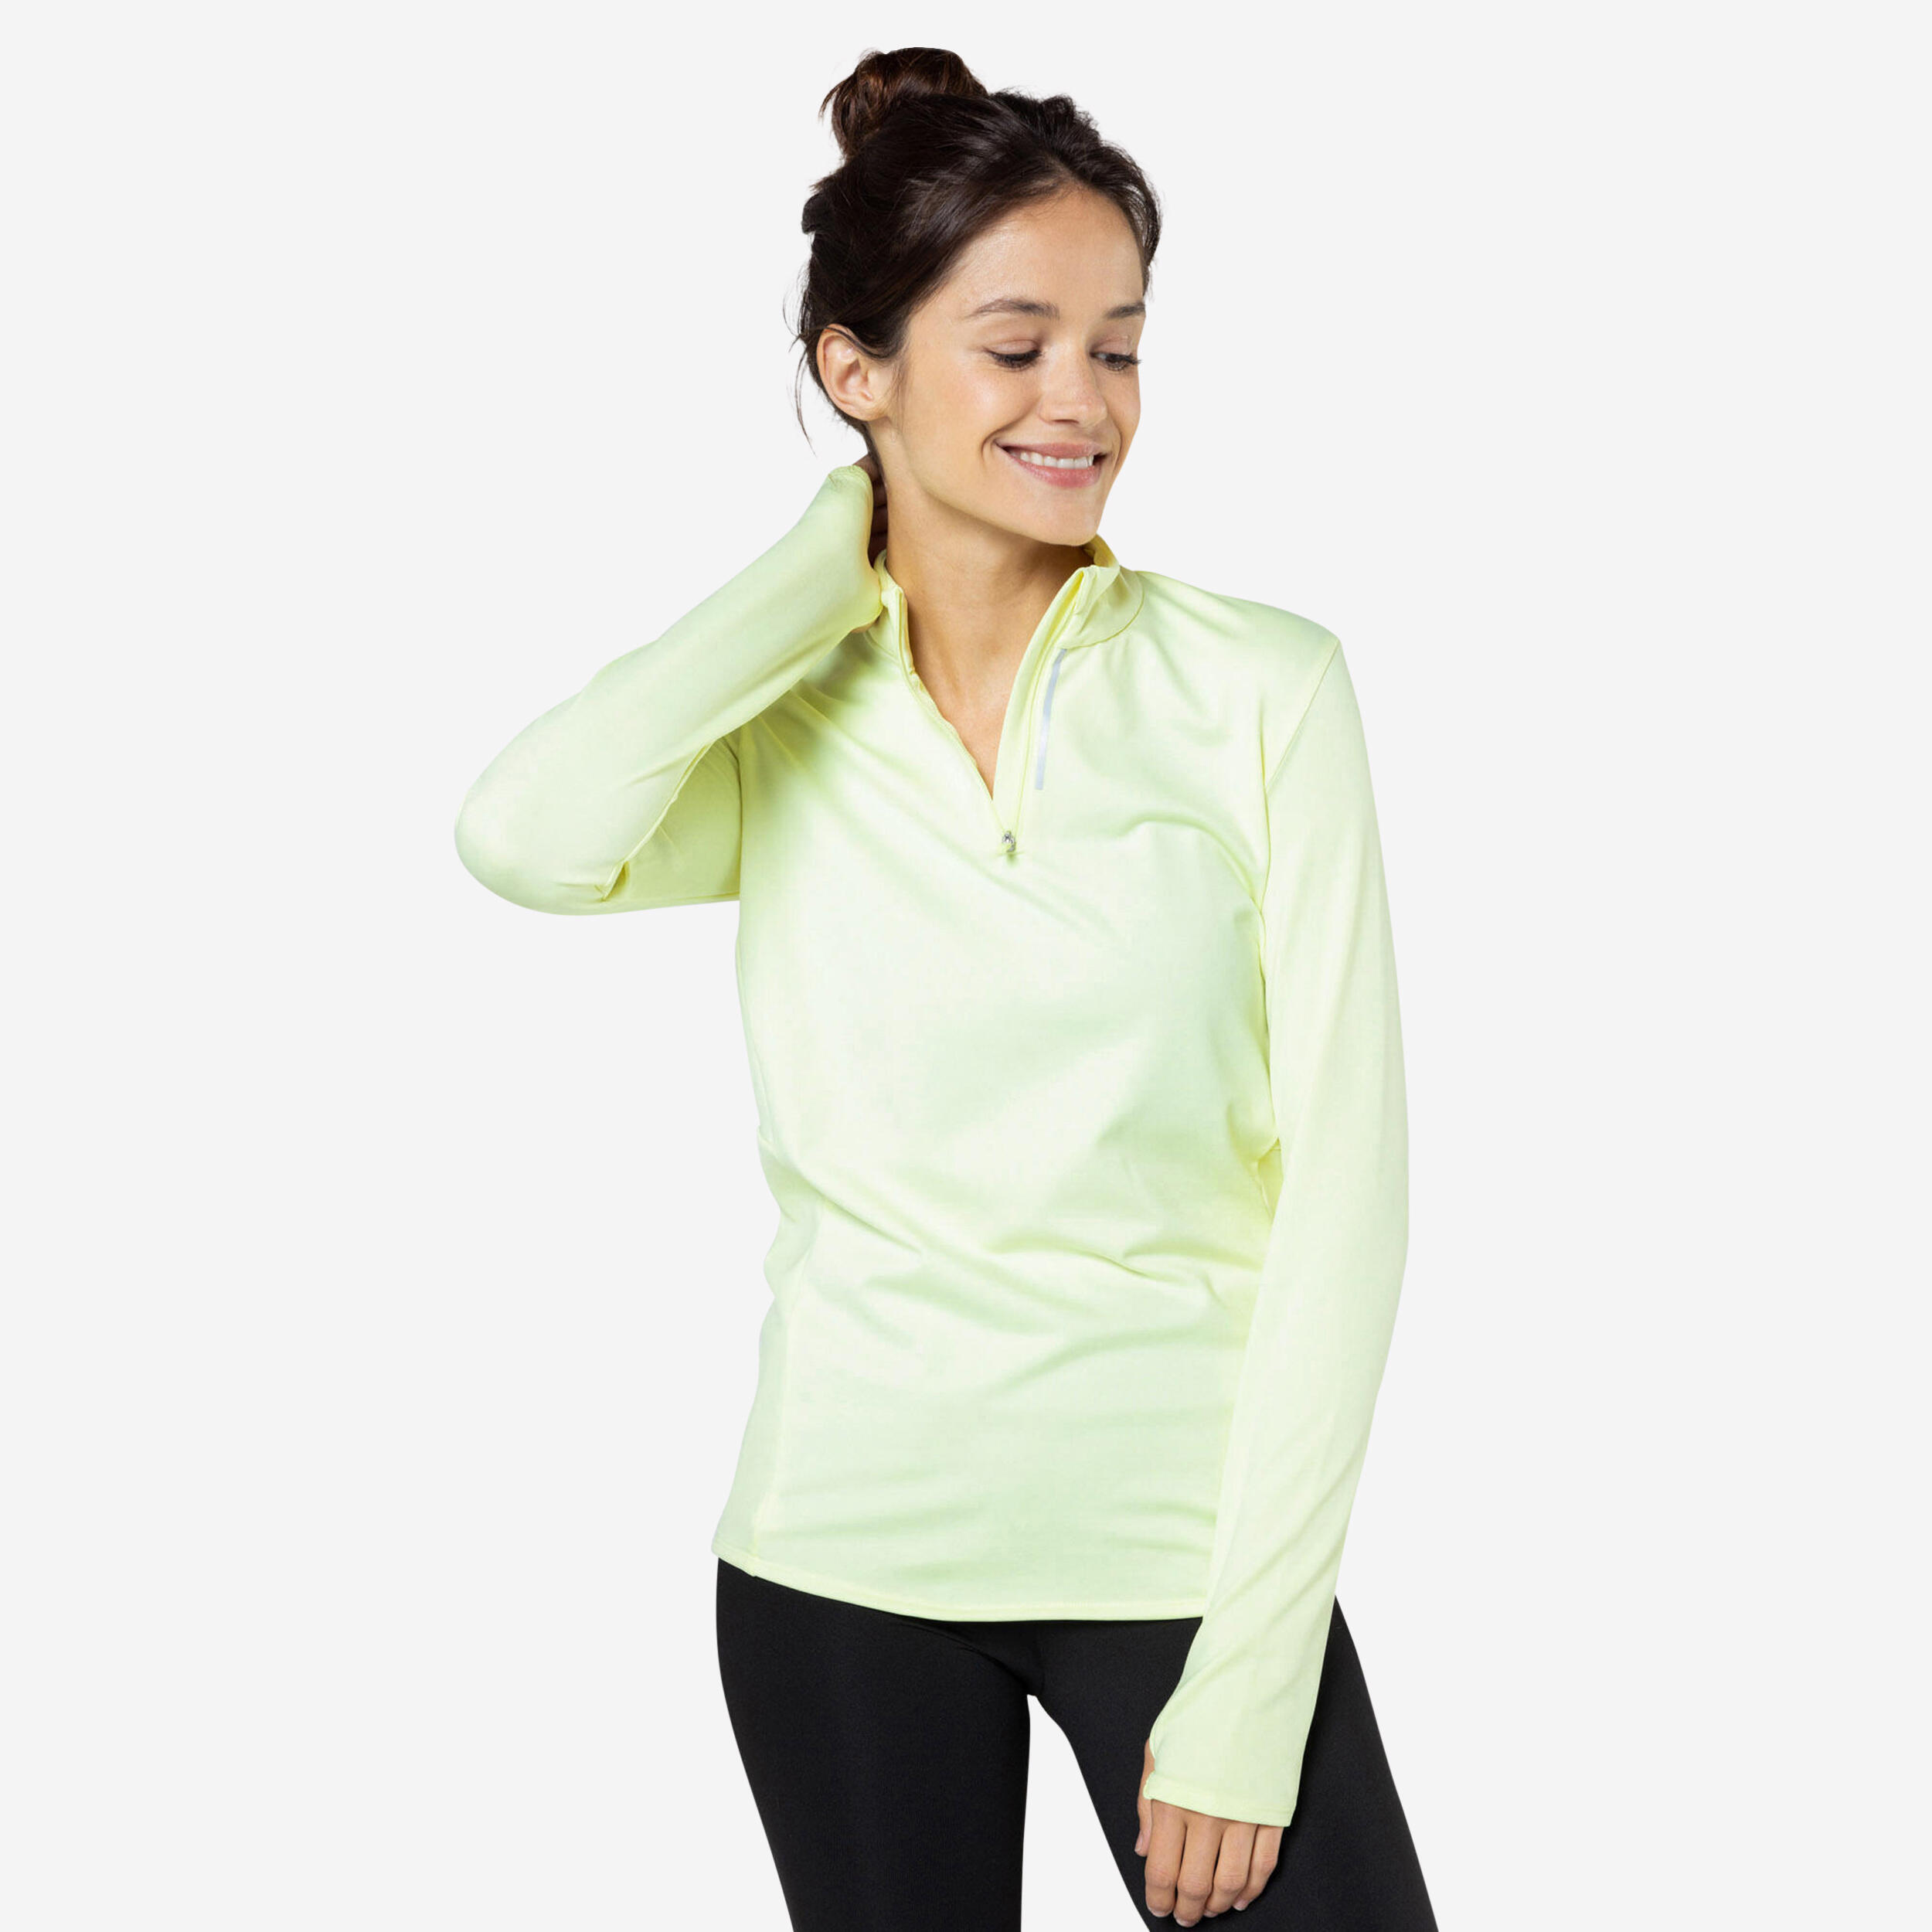 KALENJI Women's Zip Warm long-sleeved running T-shirt - yellow 